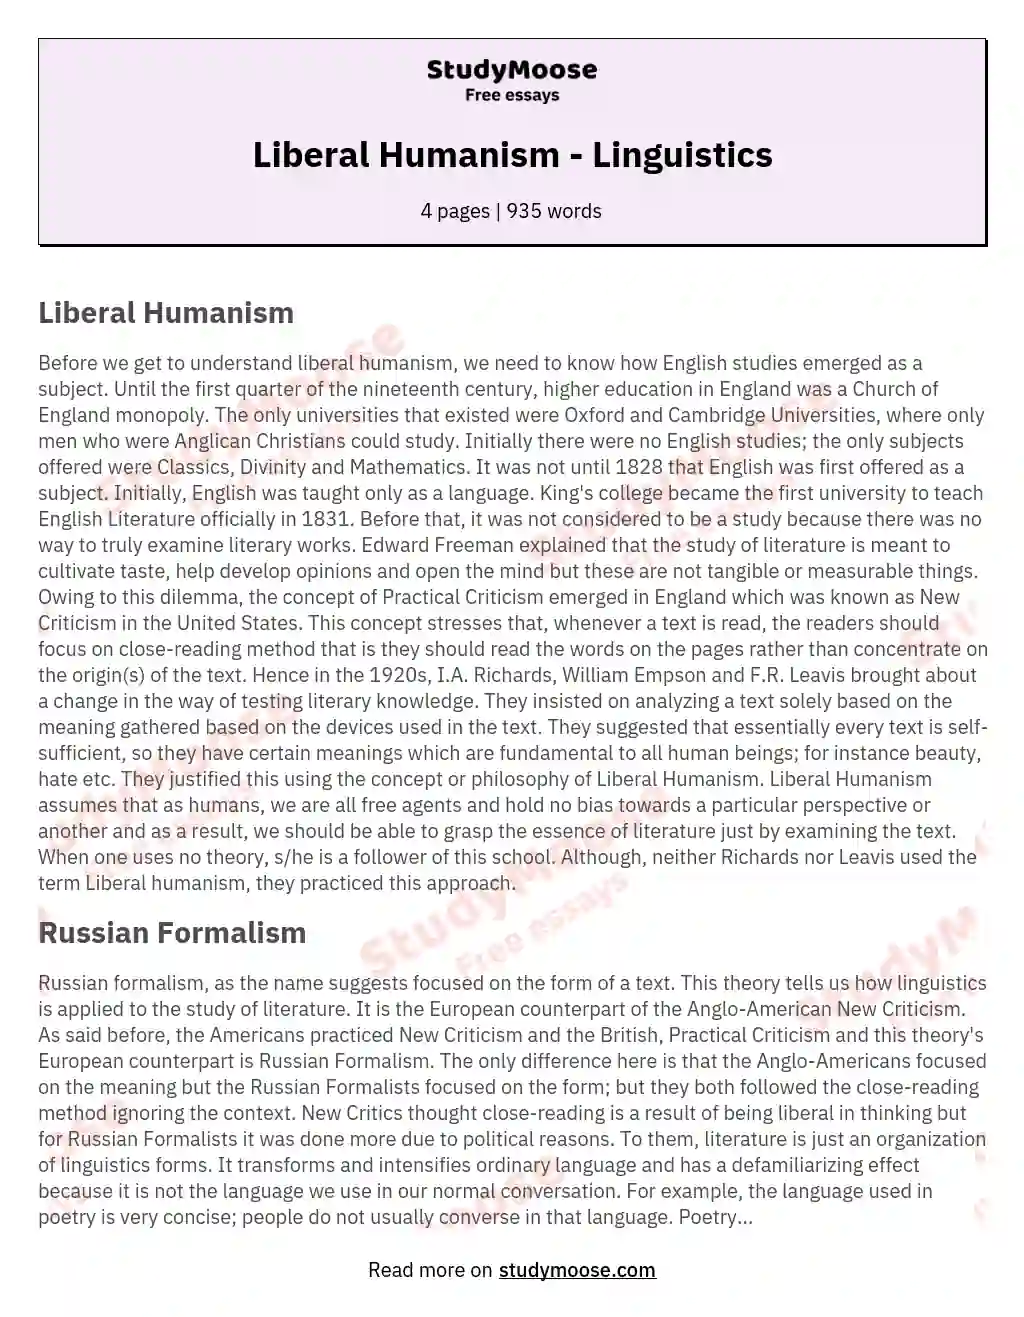 Liberal Humanism - Linguistics essay